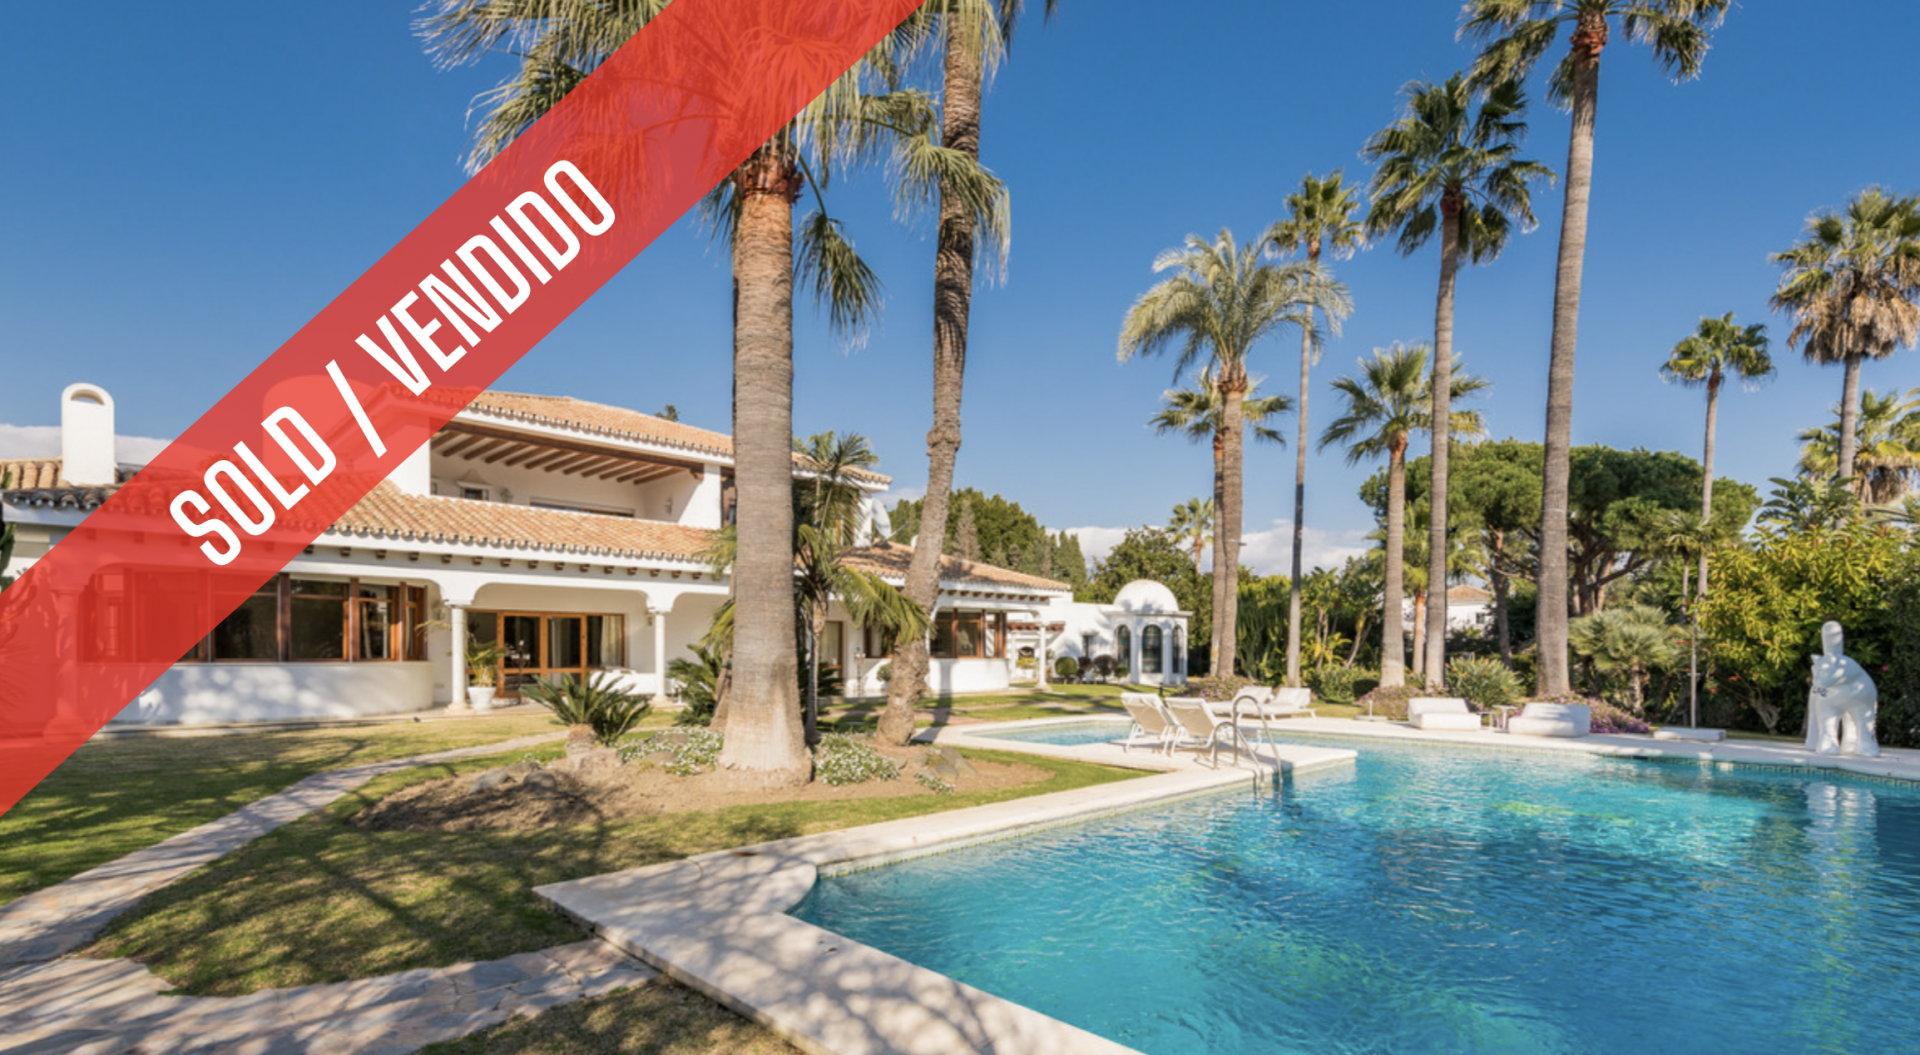 Villa de estilo tradicional andaluz situada a pocos metros de la playa de Guadalmina Baja con un espectacular jardín y un majestuoso patio andaluz